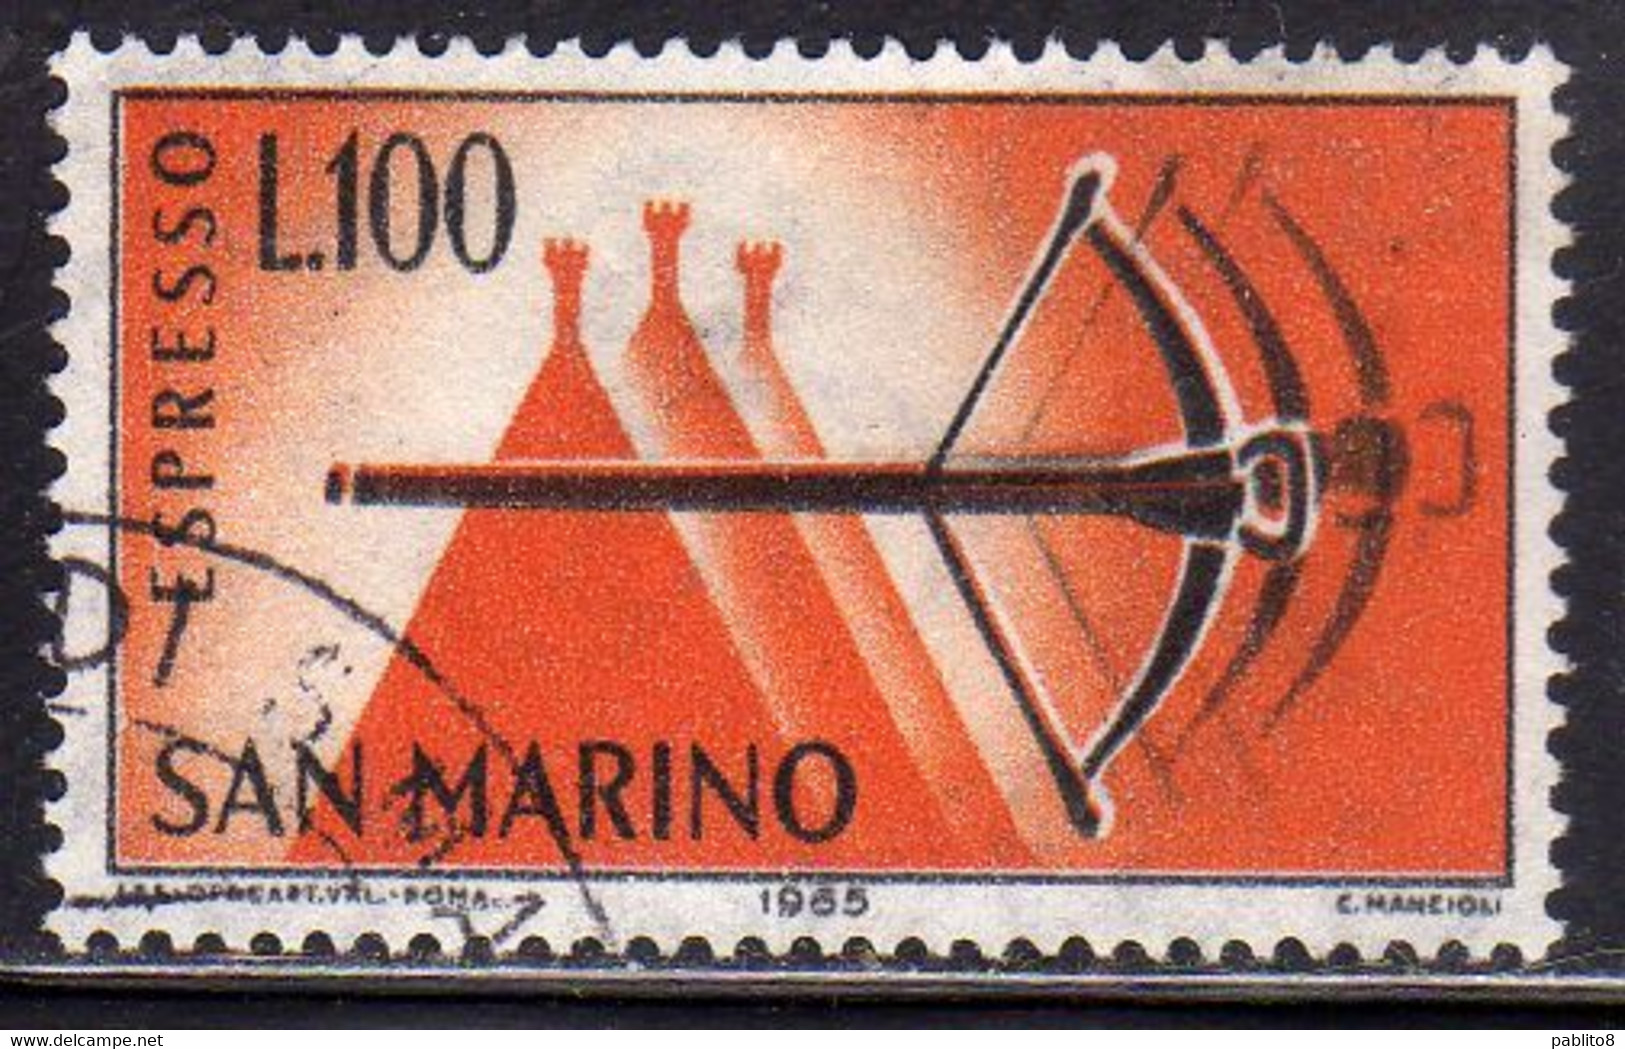 REPUBBLICA DI SAN MARINO 1966 ESPRESSI SPECIAL DELIVERY ESPRESSO BALESTRA LIRE 100 USATO USED OBLITERE' - Express Letter Stamps